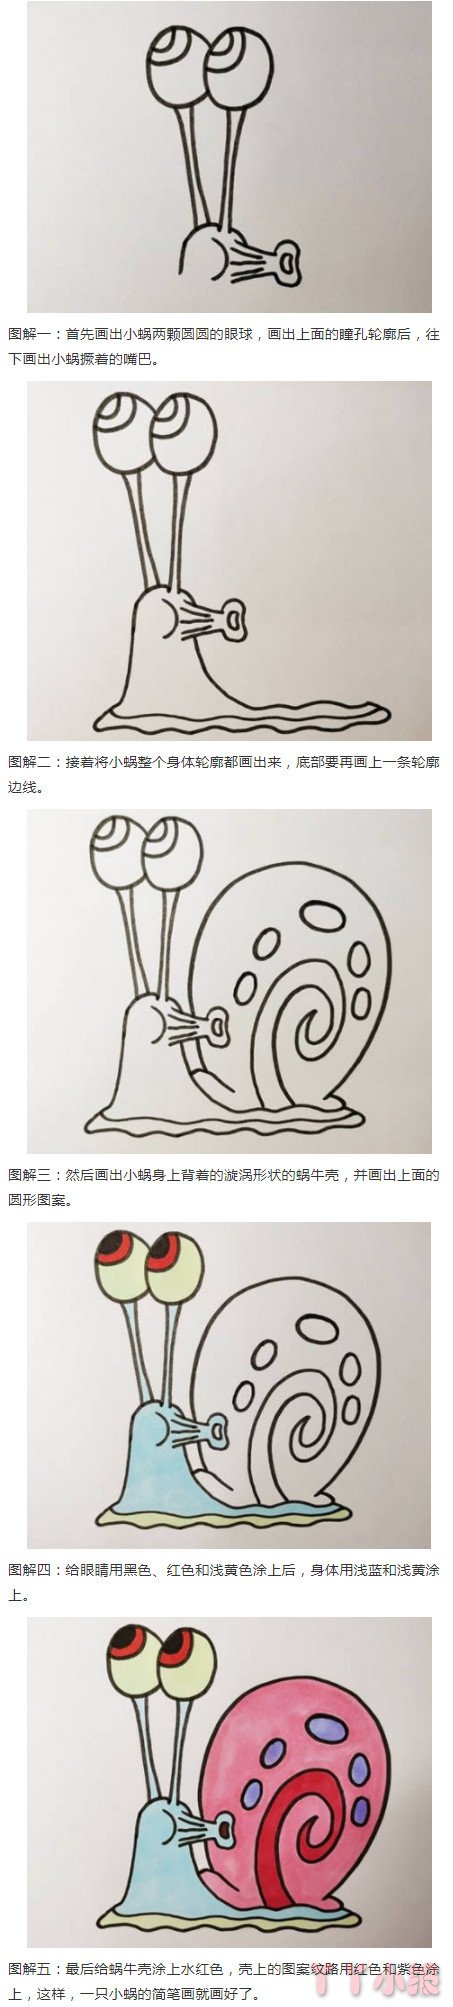 卡通蜗牛的画法步骤涂色 蜗牛简笔画图片